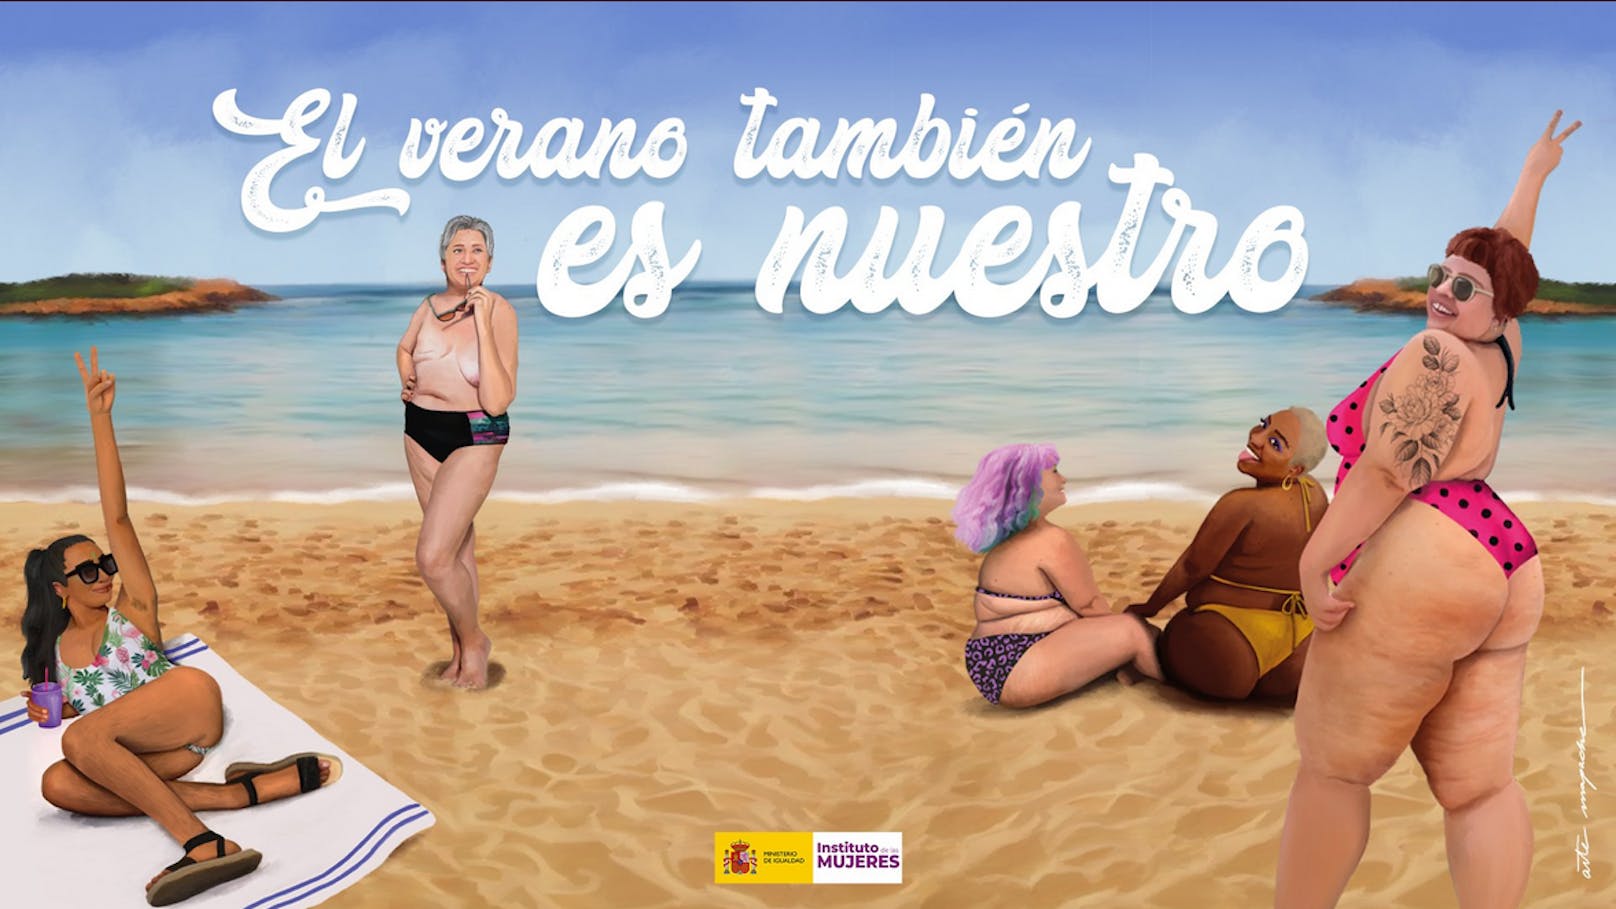 Plakat der Kampagne, der Titel: "Der Sommer gehört auch uns."